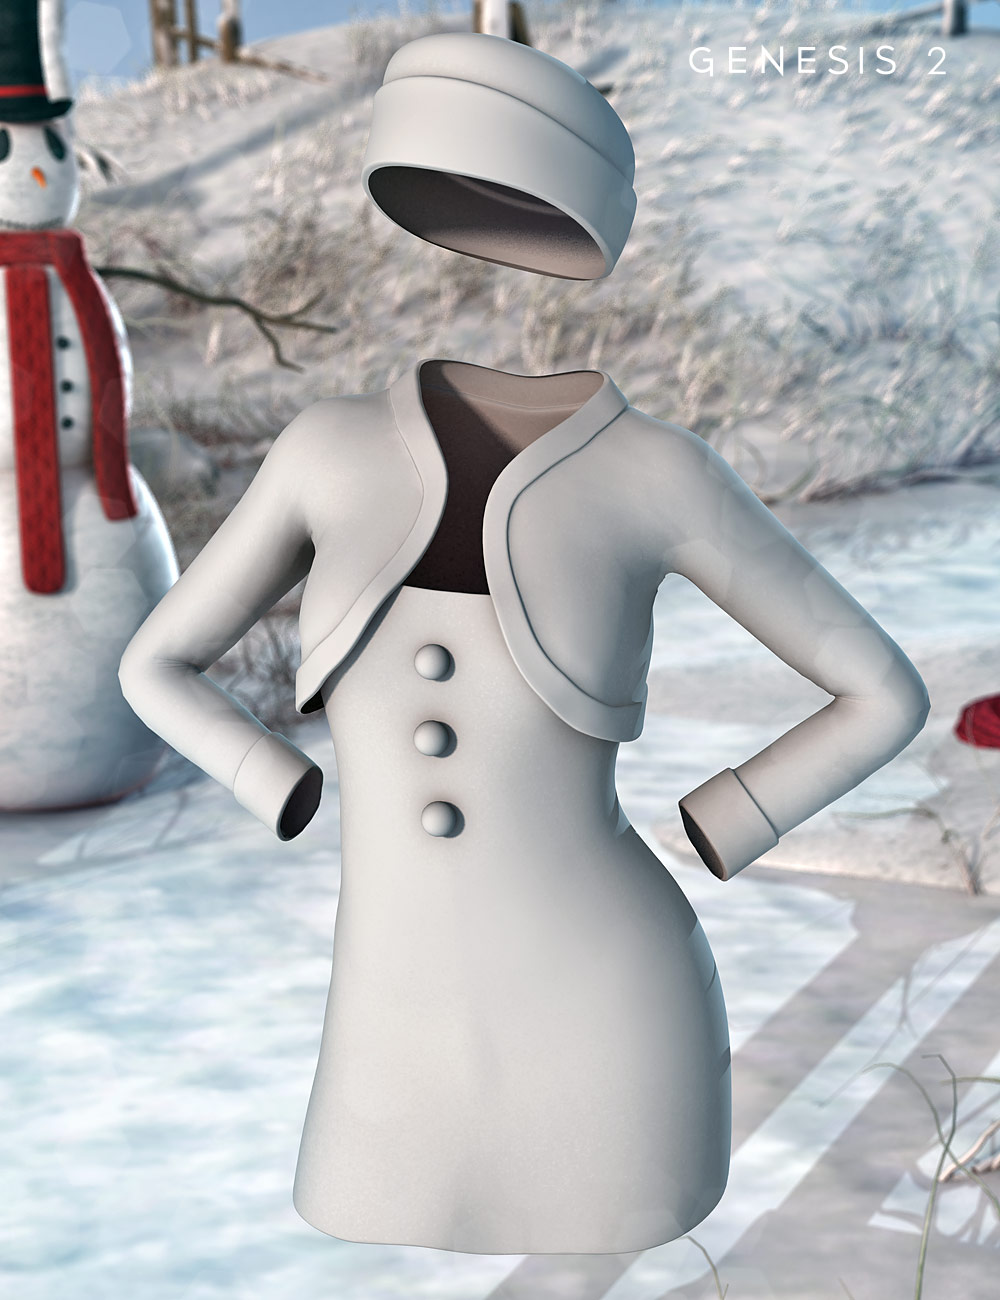 Frosty Dress for Genesis 2 Female(s) by: Shox-DesignKarth, 3D Models by Daz 3D